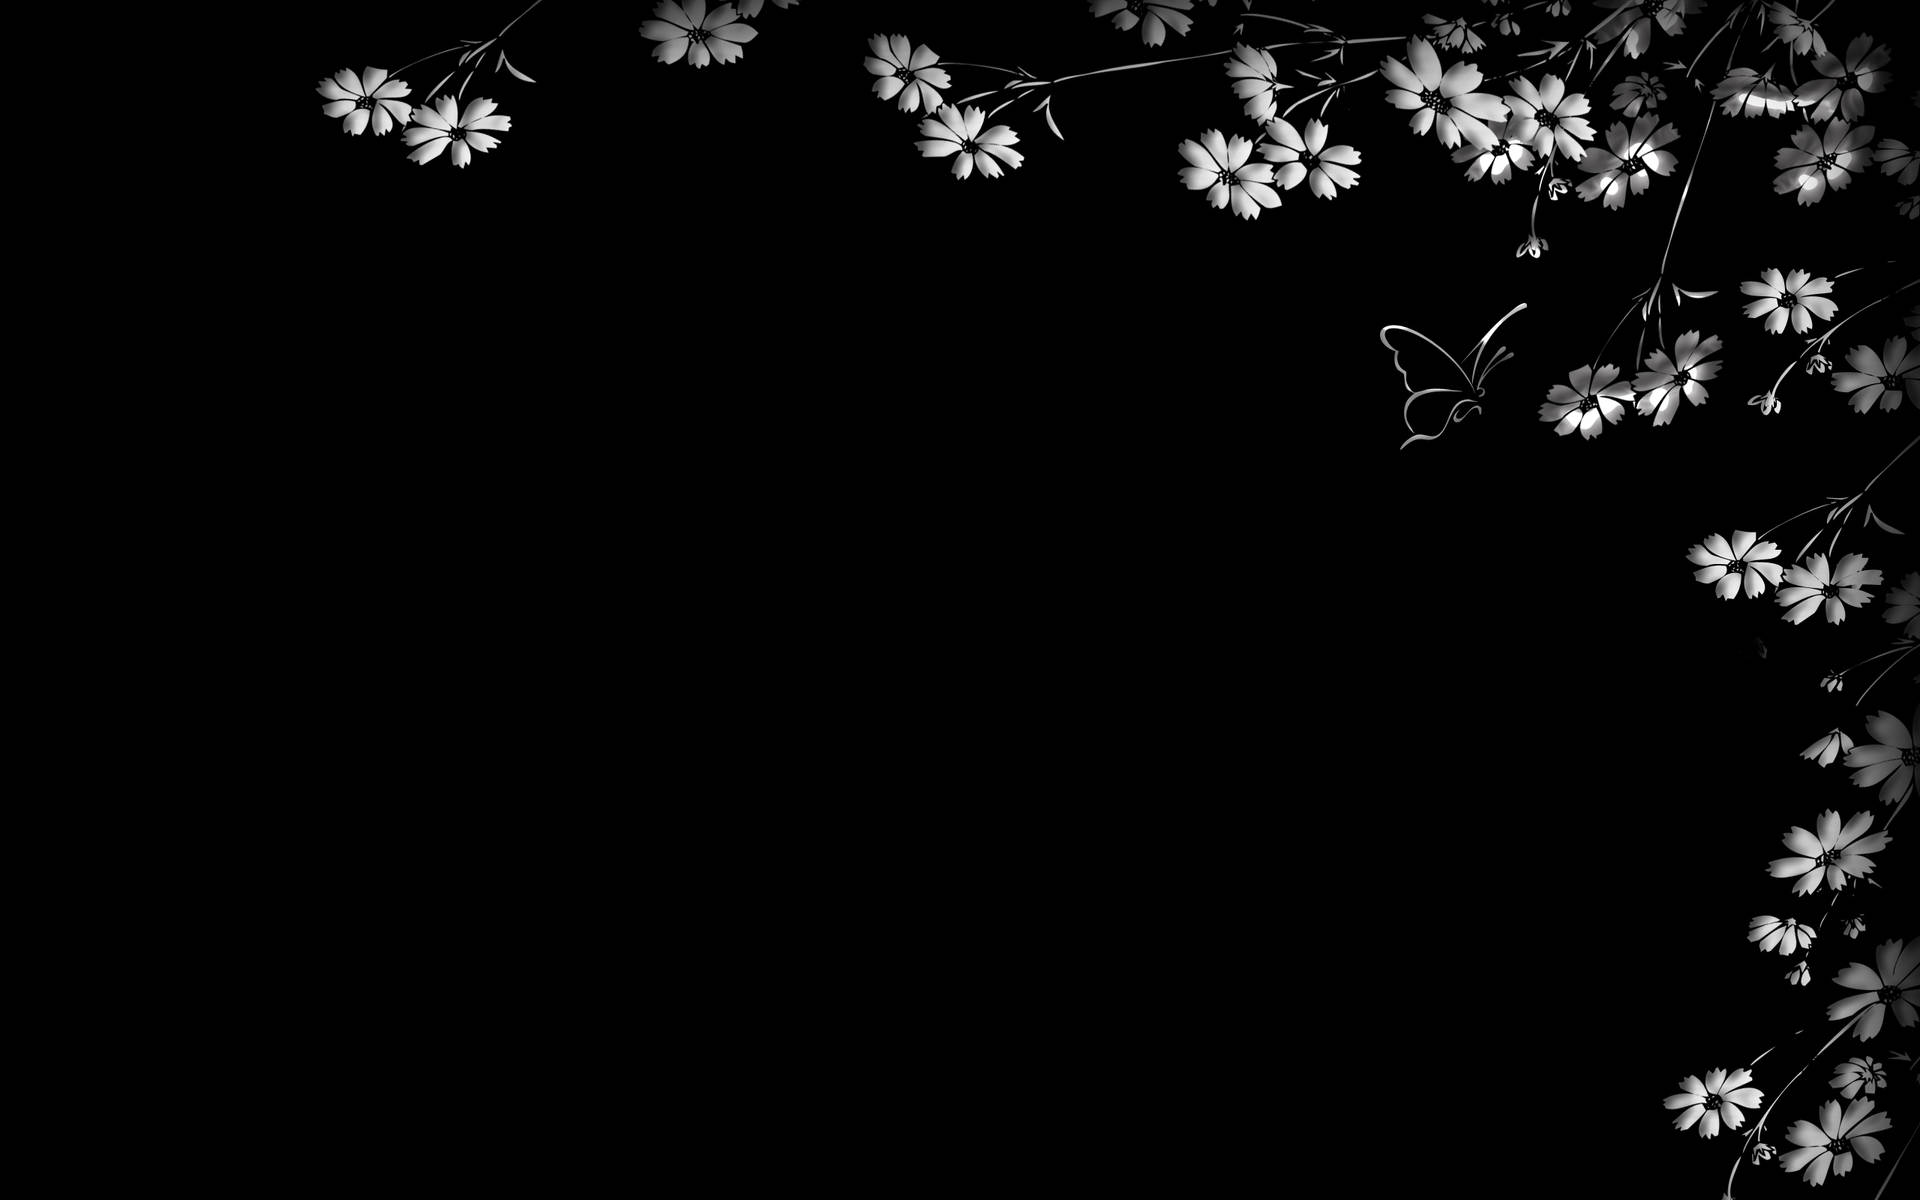 Fondode Pantalla De Flores Y Mariposas En Blanco Y Negro. Fondo de pantalla